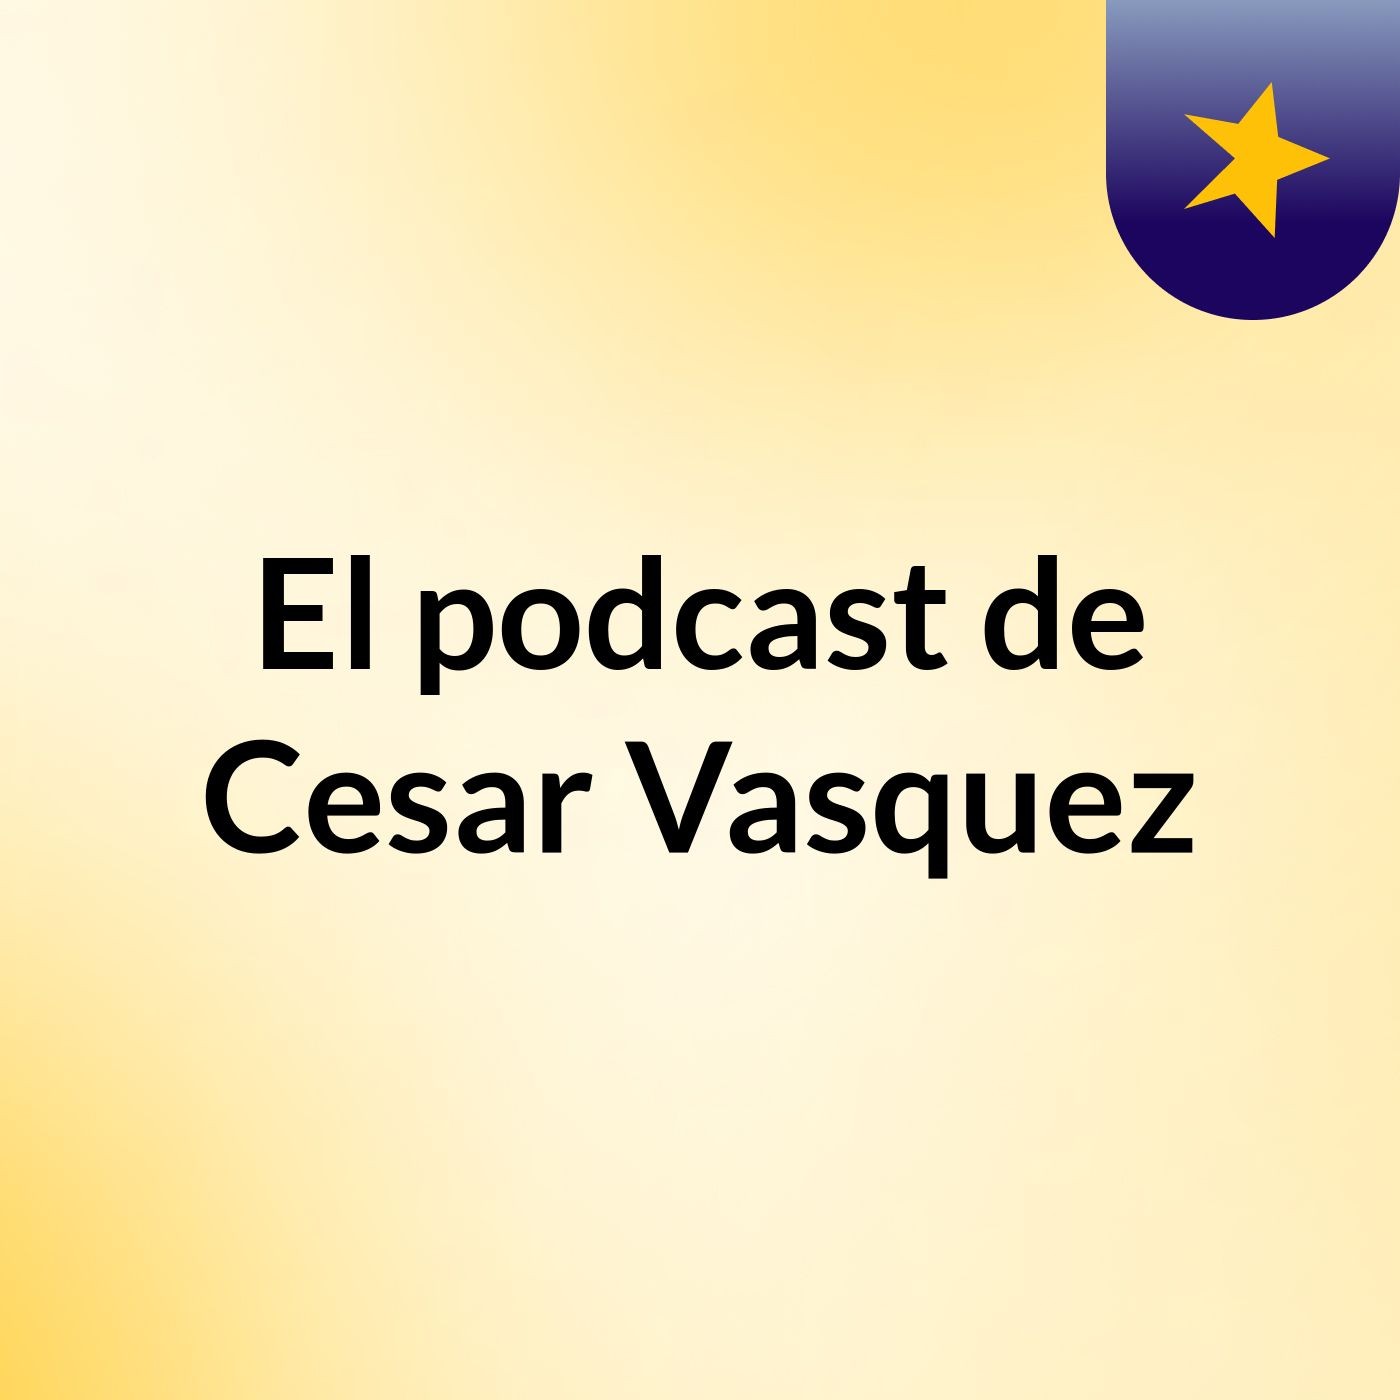 El podcast de Cesar Vasquez